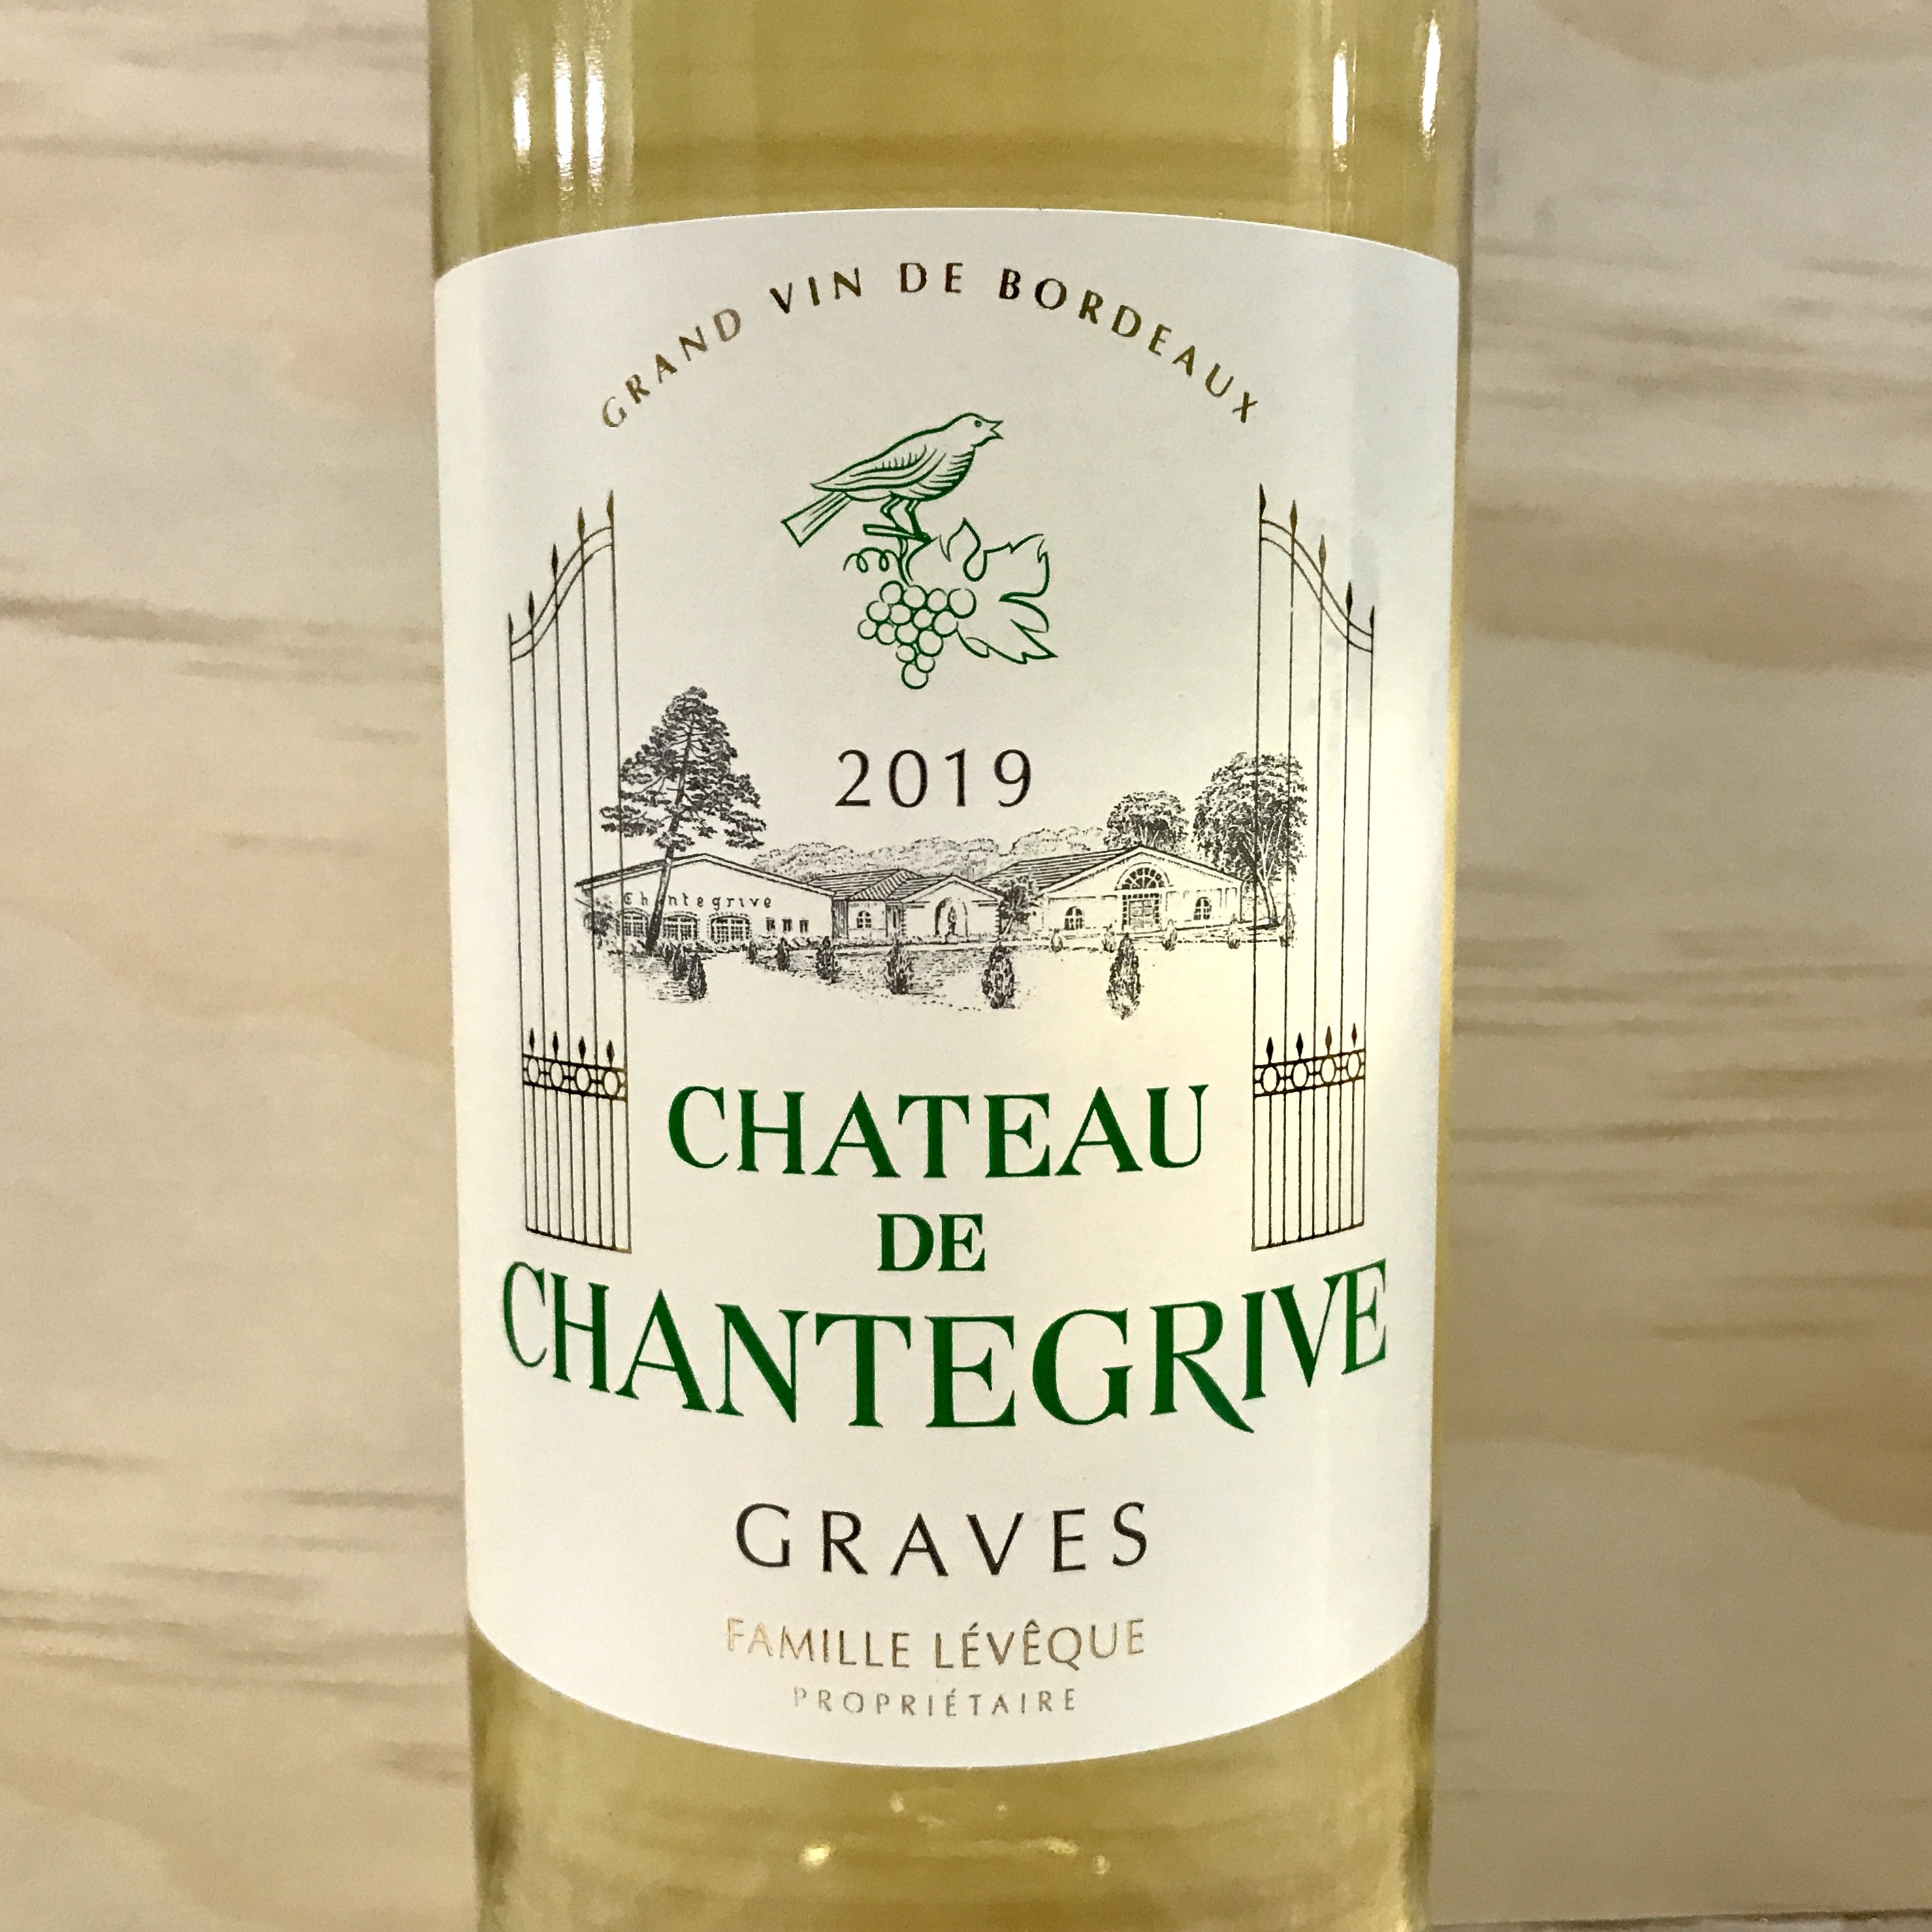 Chateau de Chantegrive Graves White Bordeaux 2019